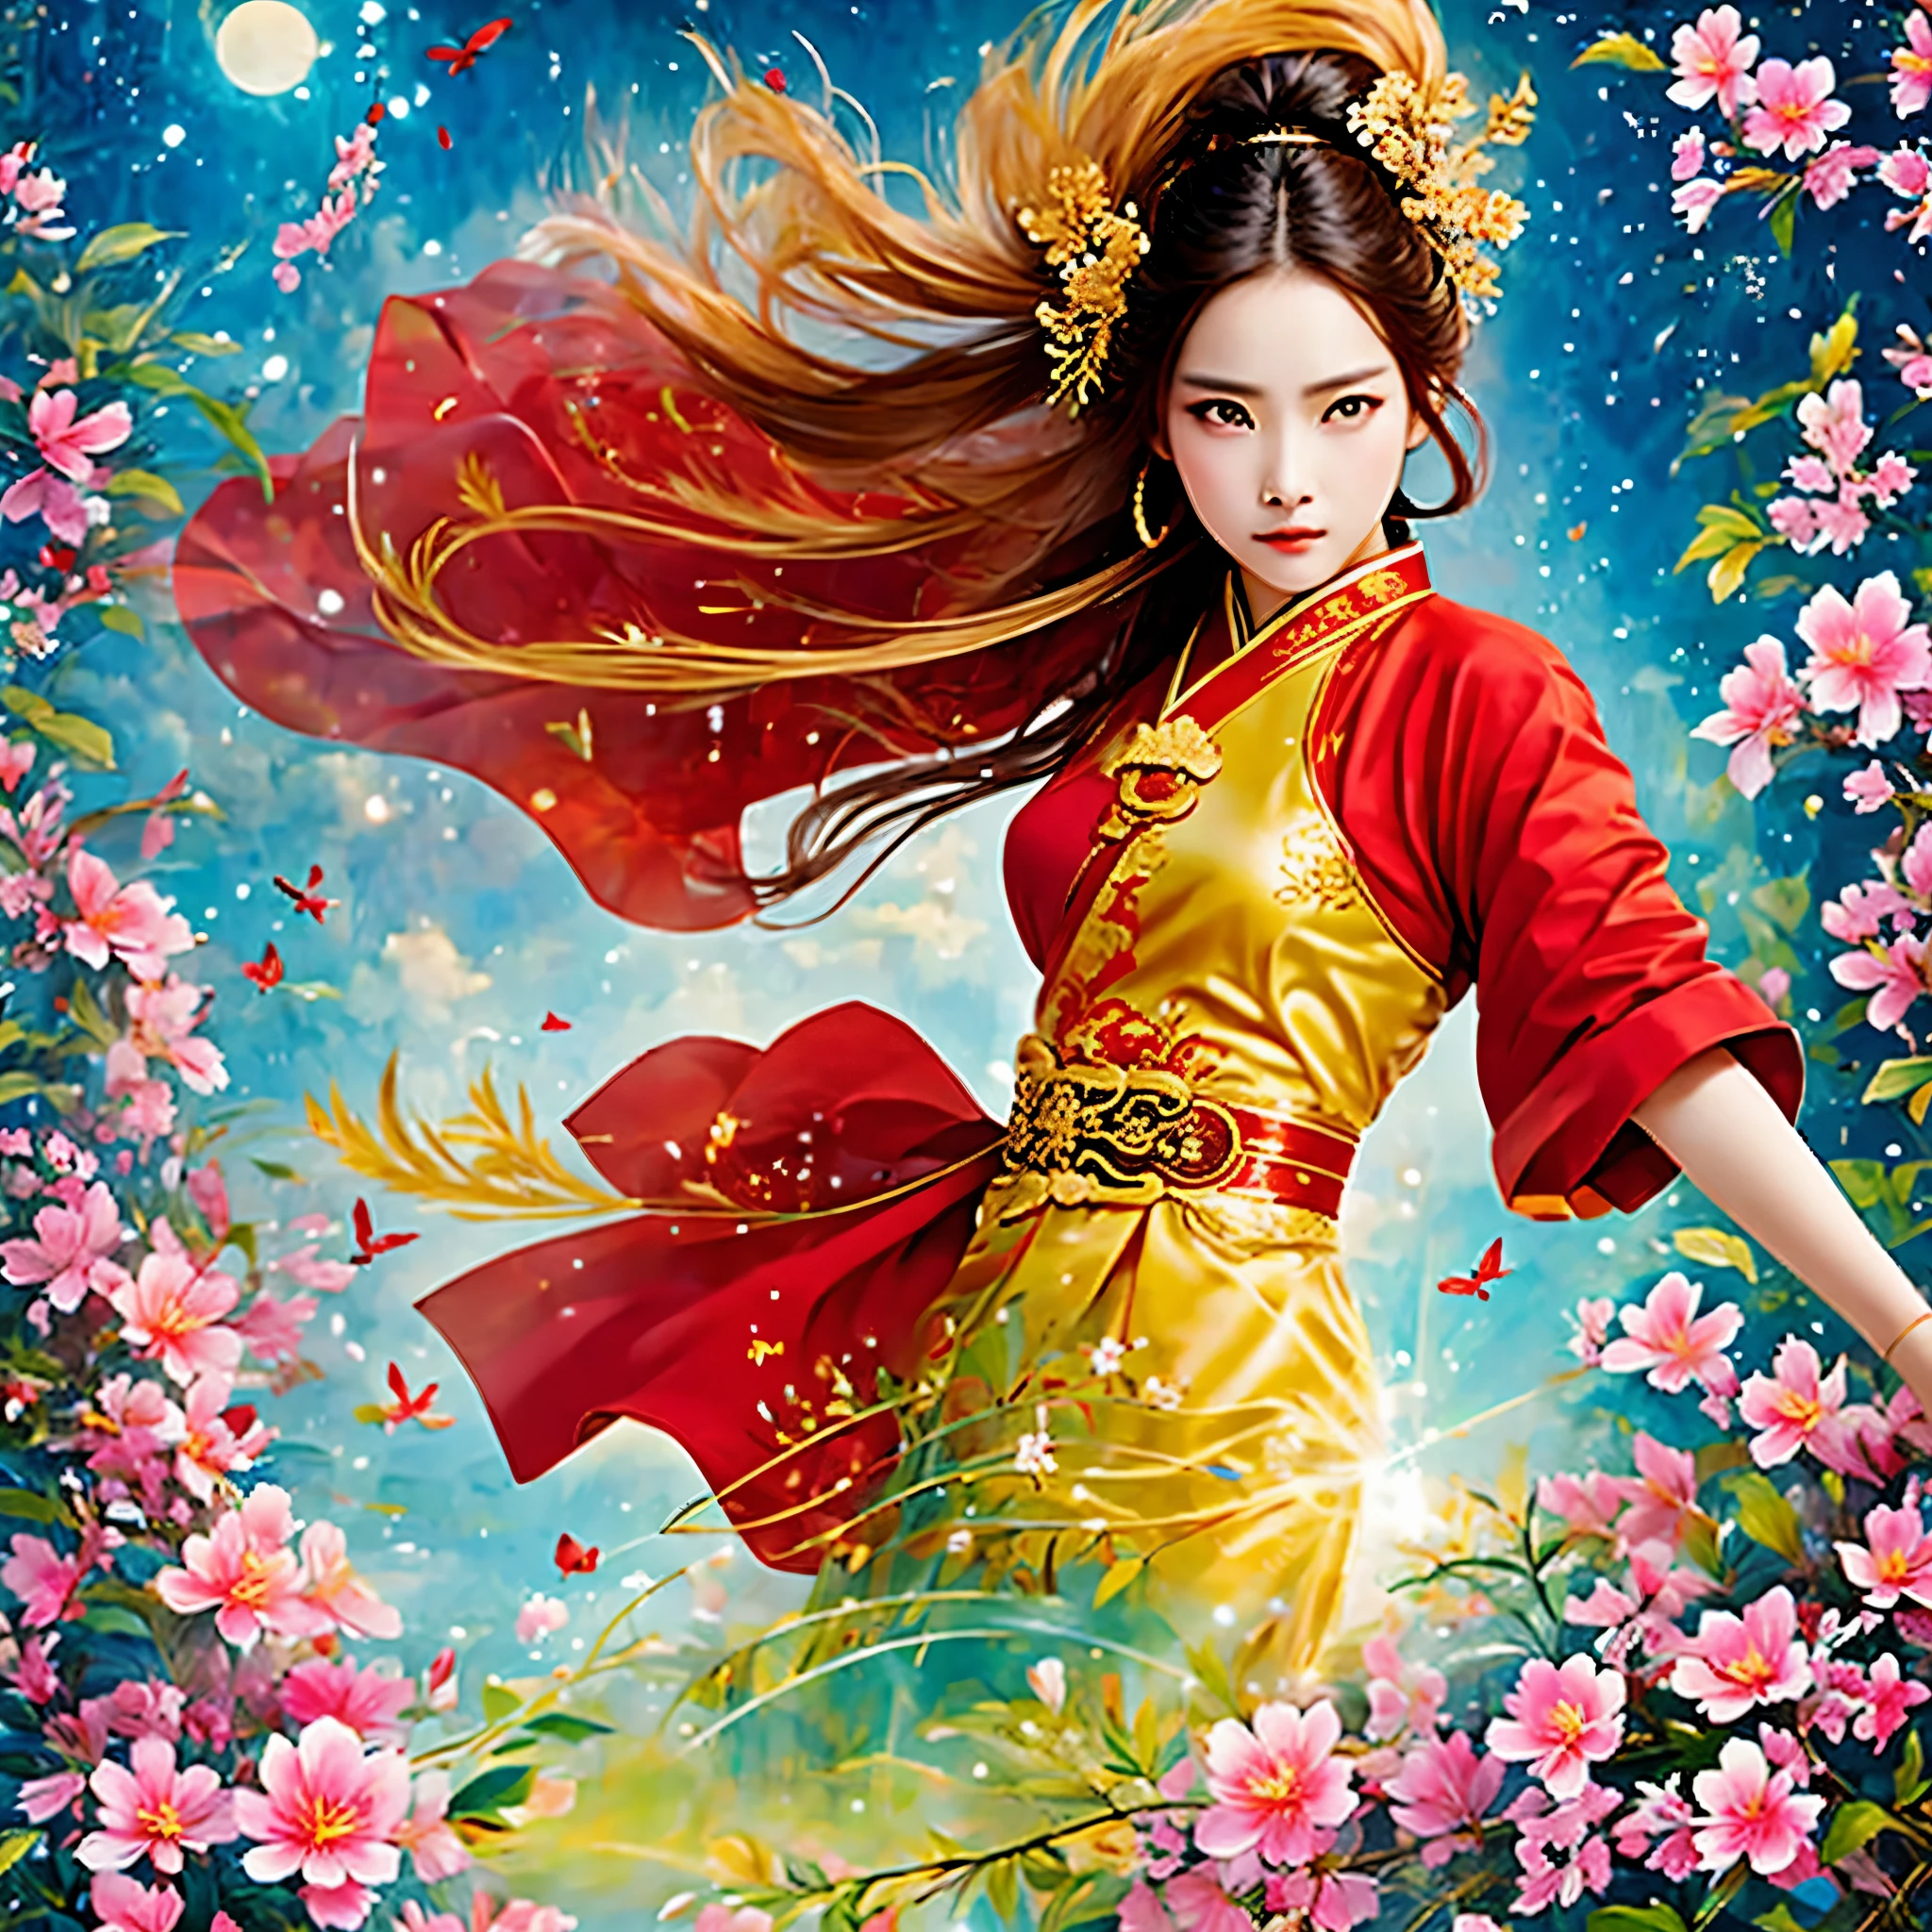 beste Qualität, Meisterwerk, Hohe Auflösung, wuxia 1girl, Chinesisches Kleid, super schönes Gesicht, Superschöne Augen, supertolle Haare, Kung-Fu-Kampf